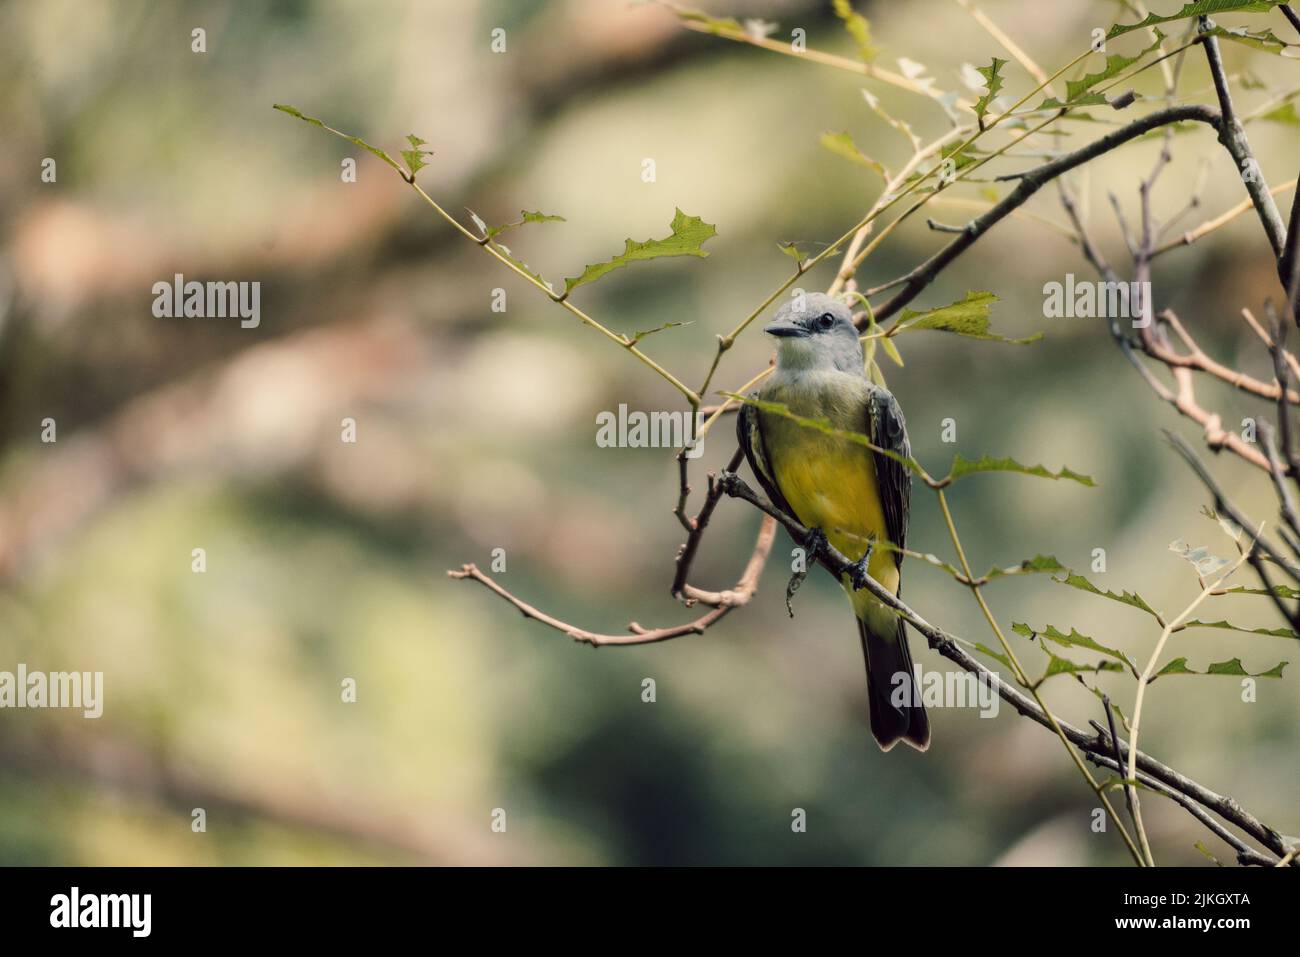 La macro foto de un colorido pájaro Coraciiformes sobre una pequeña rama verde Foto de stock